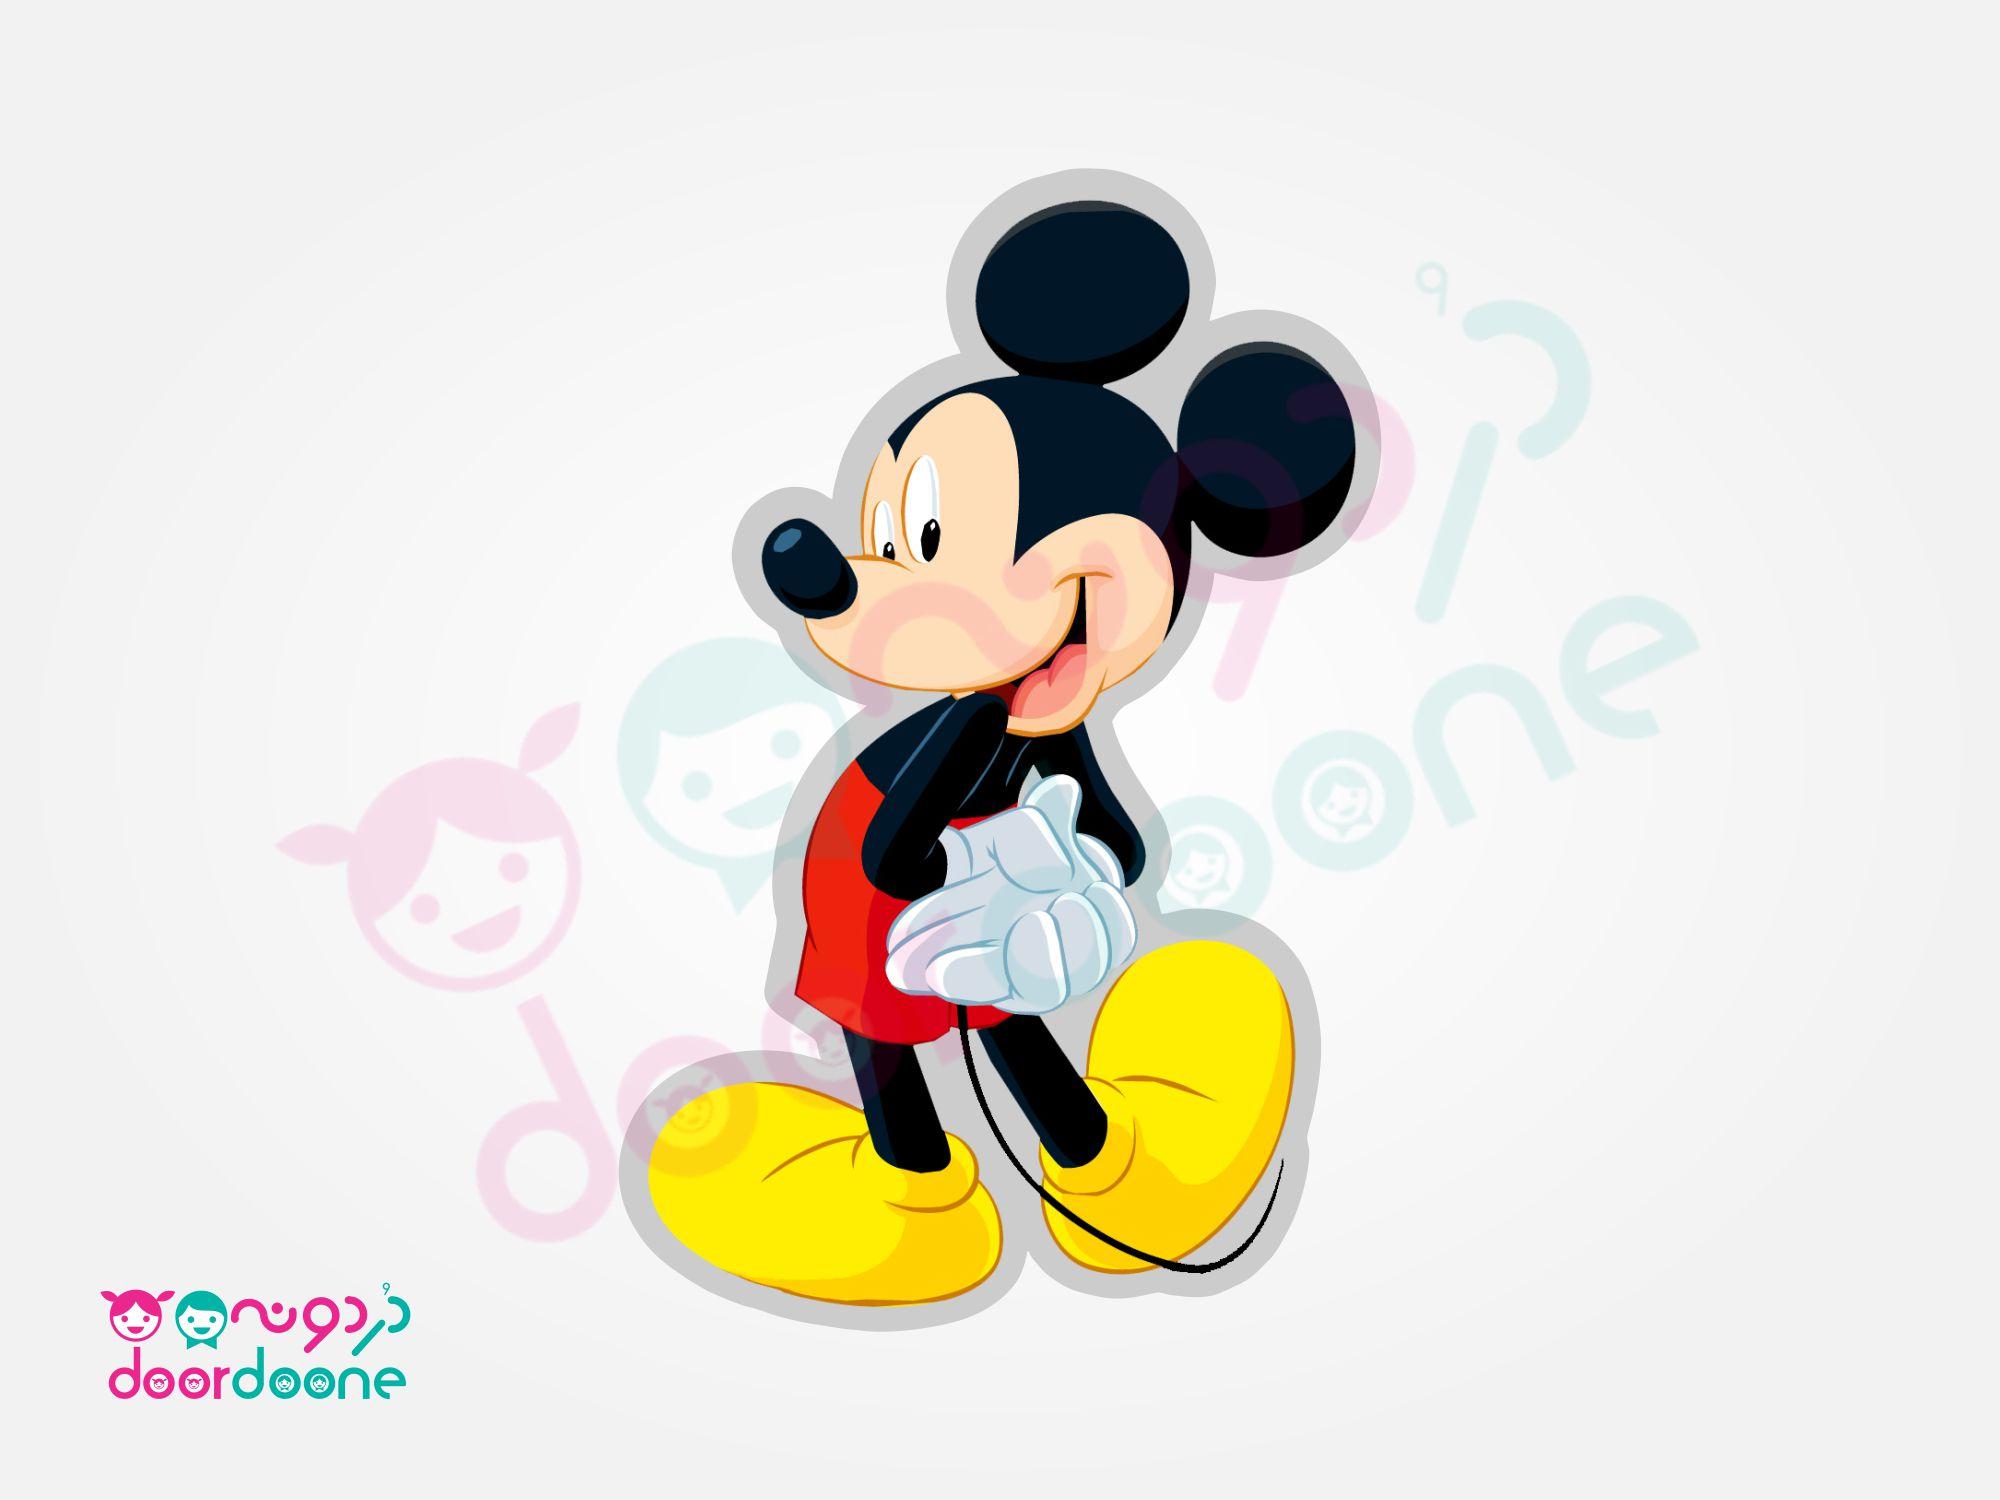 استند ميکی ماوس (Mikey Mouse) - ارتفاع 70 سانتيمتر